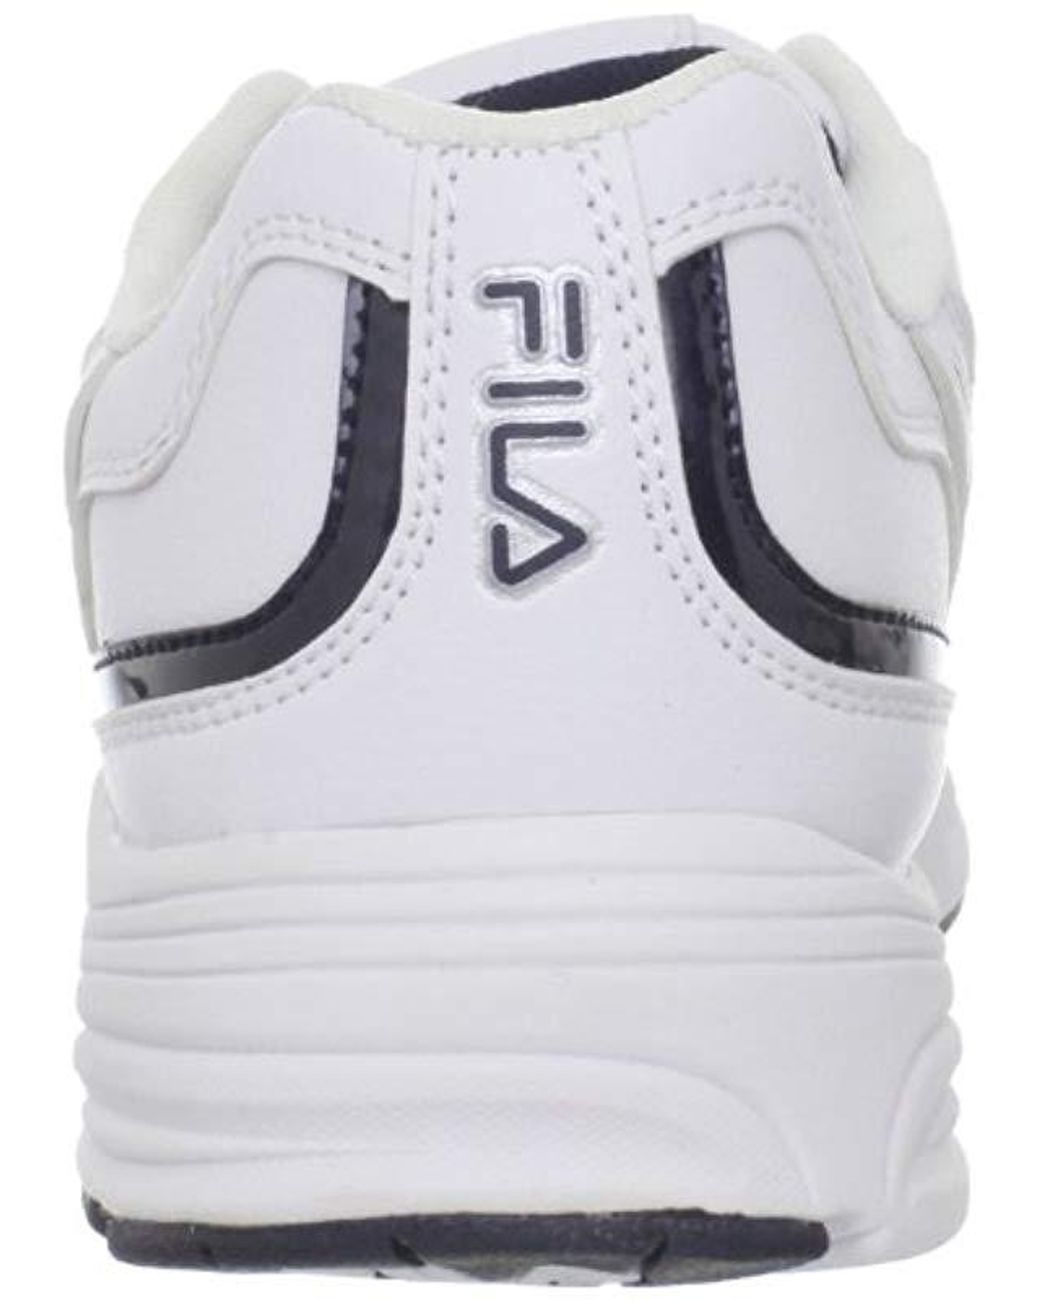 Fila Talon 3 Sneaker in White/Navy (White) for Men | Lyst